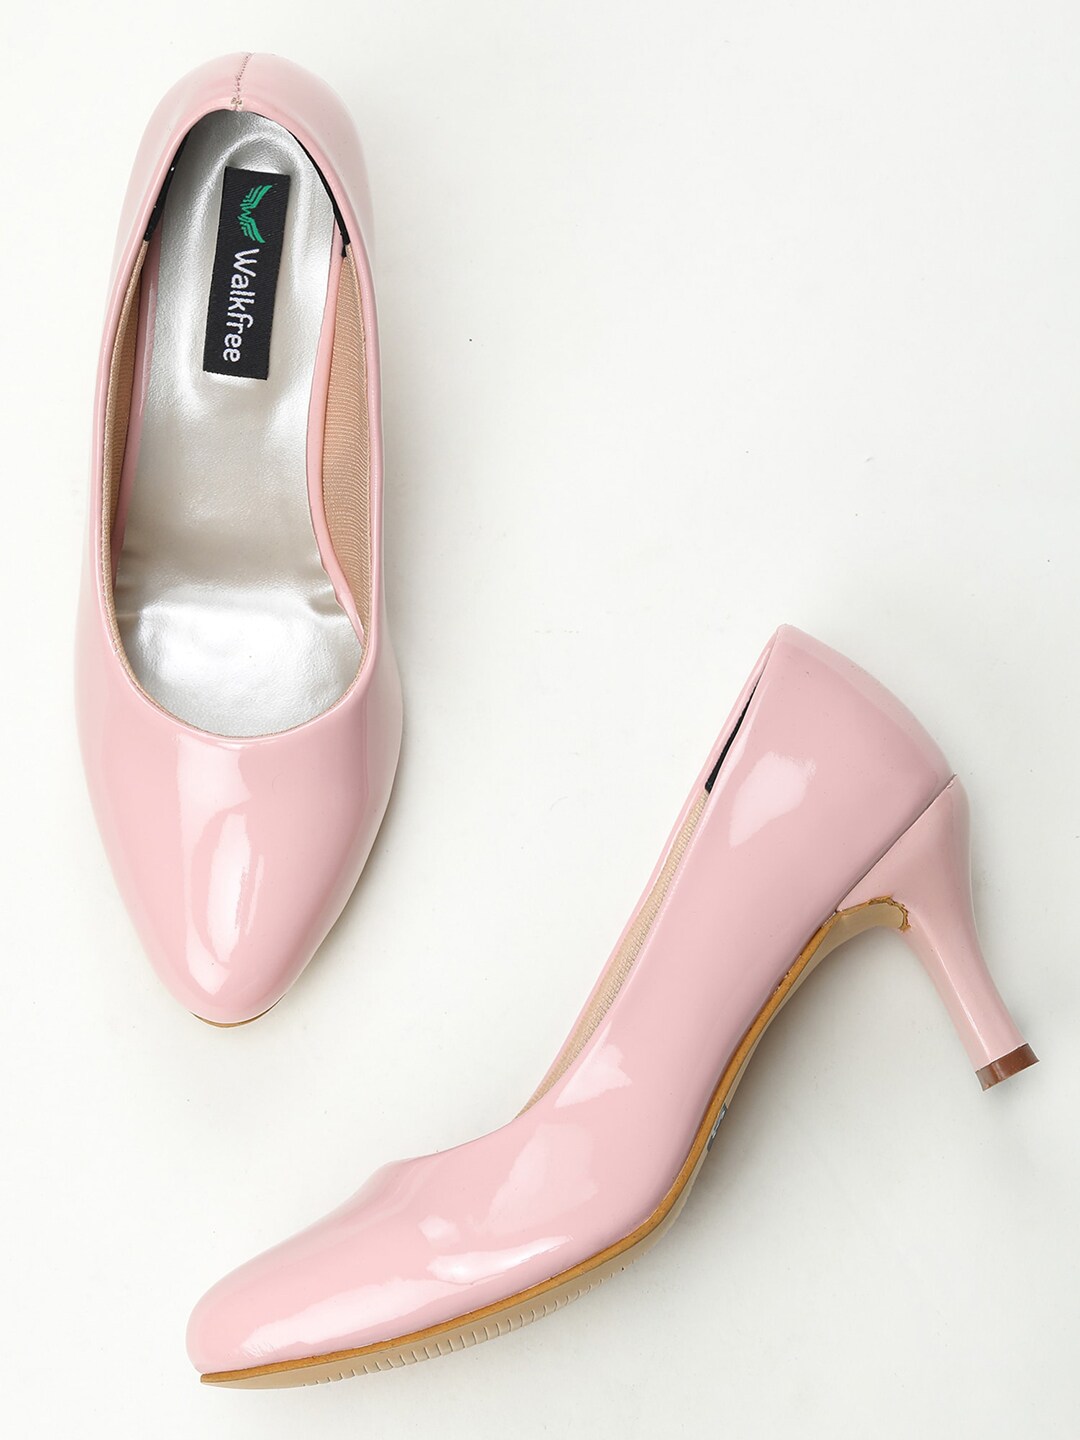 Walkfree Pink Slim Heels Pumps Price in India